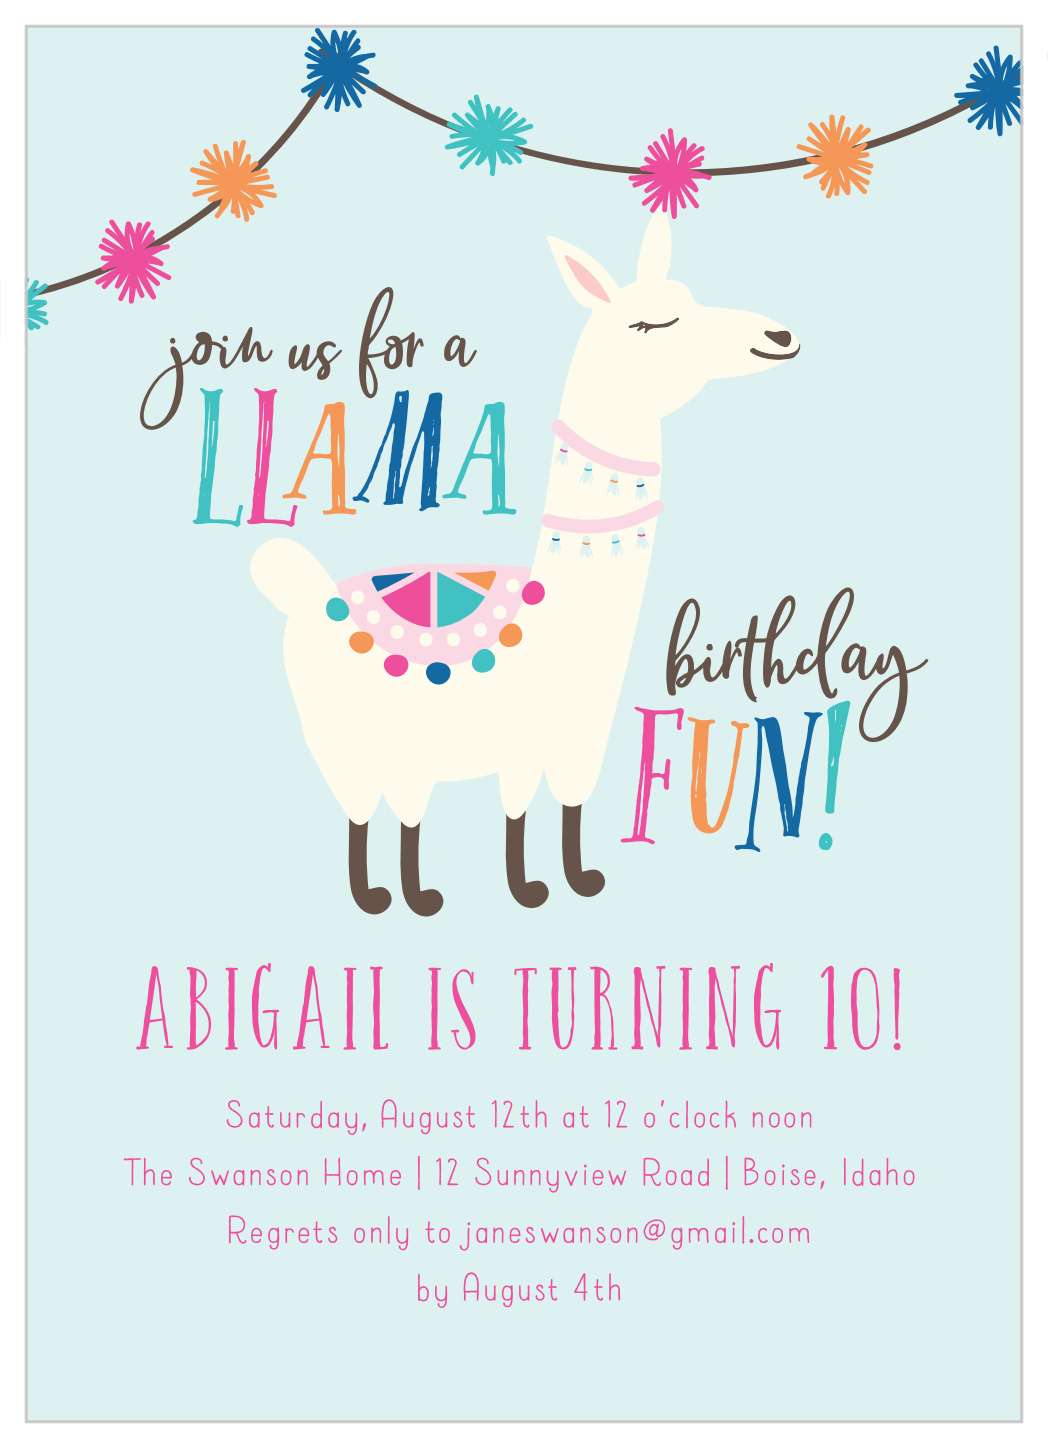 A Llama Fun Children